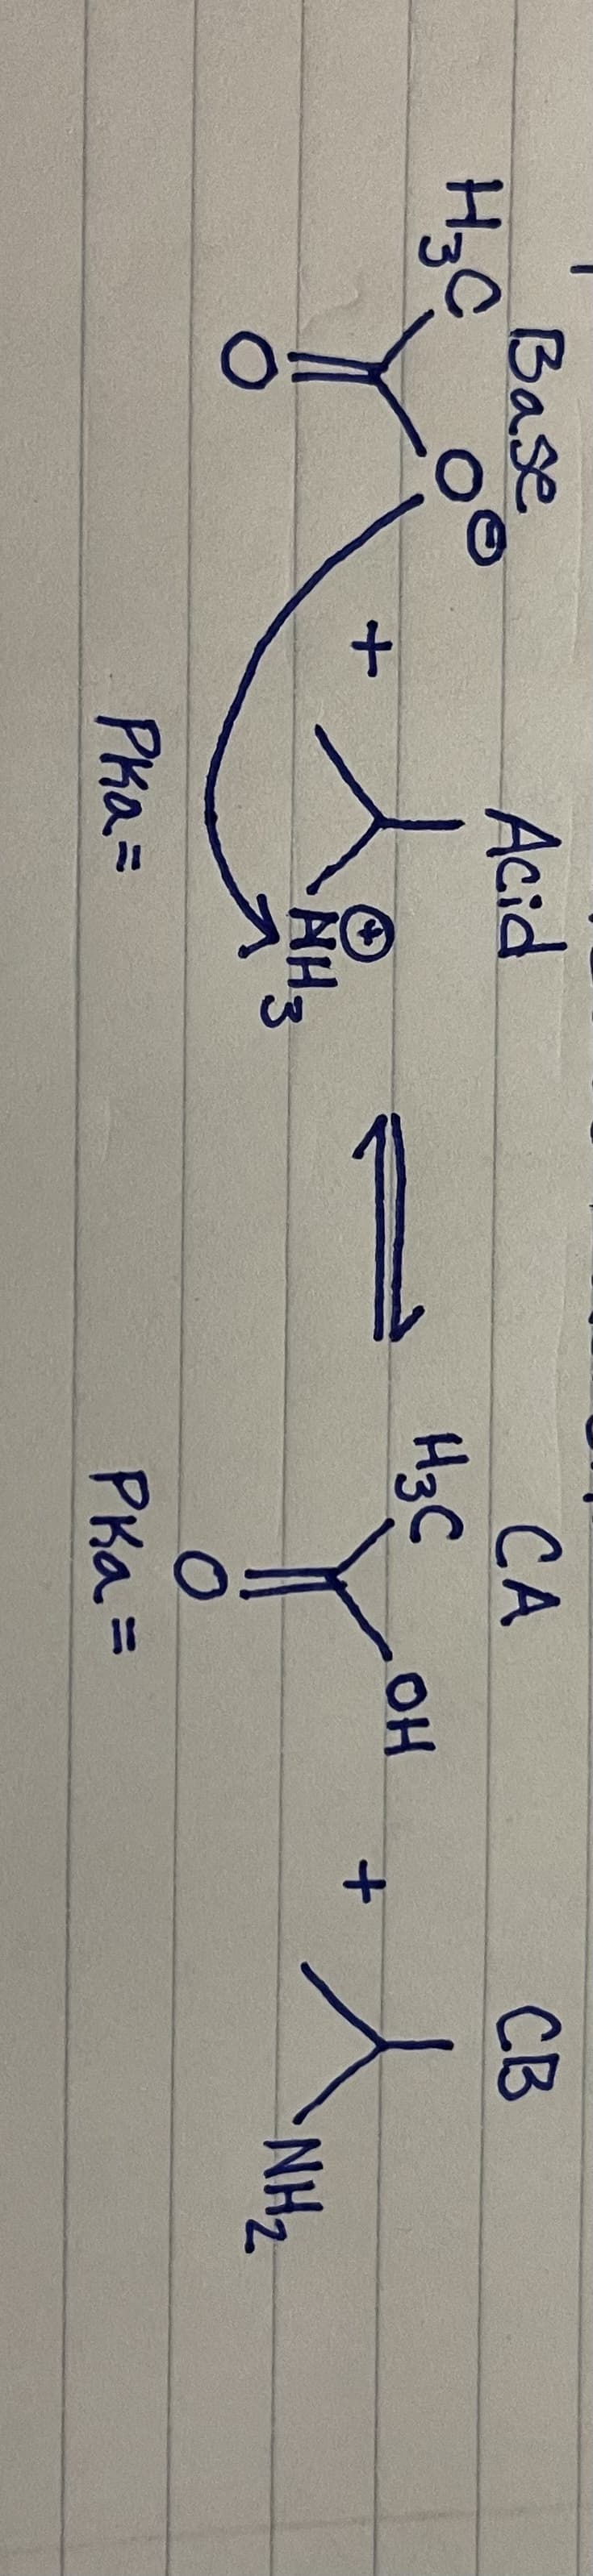 H₂C
Base
о
+
Acid
л
рка =
AH3
А
Н3С
CA
о
Pka =
он
+
СВ
Линг